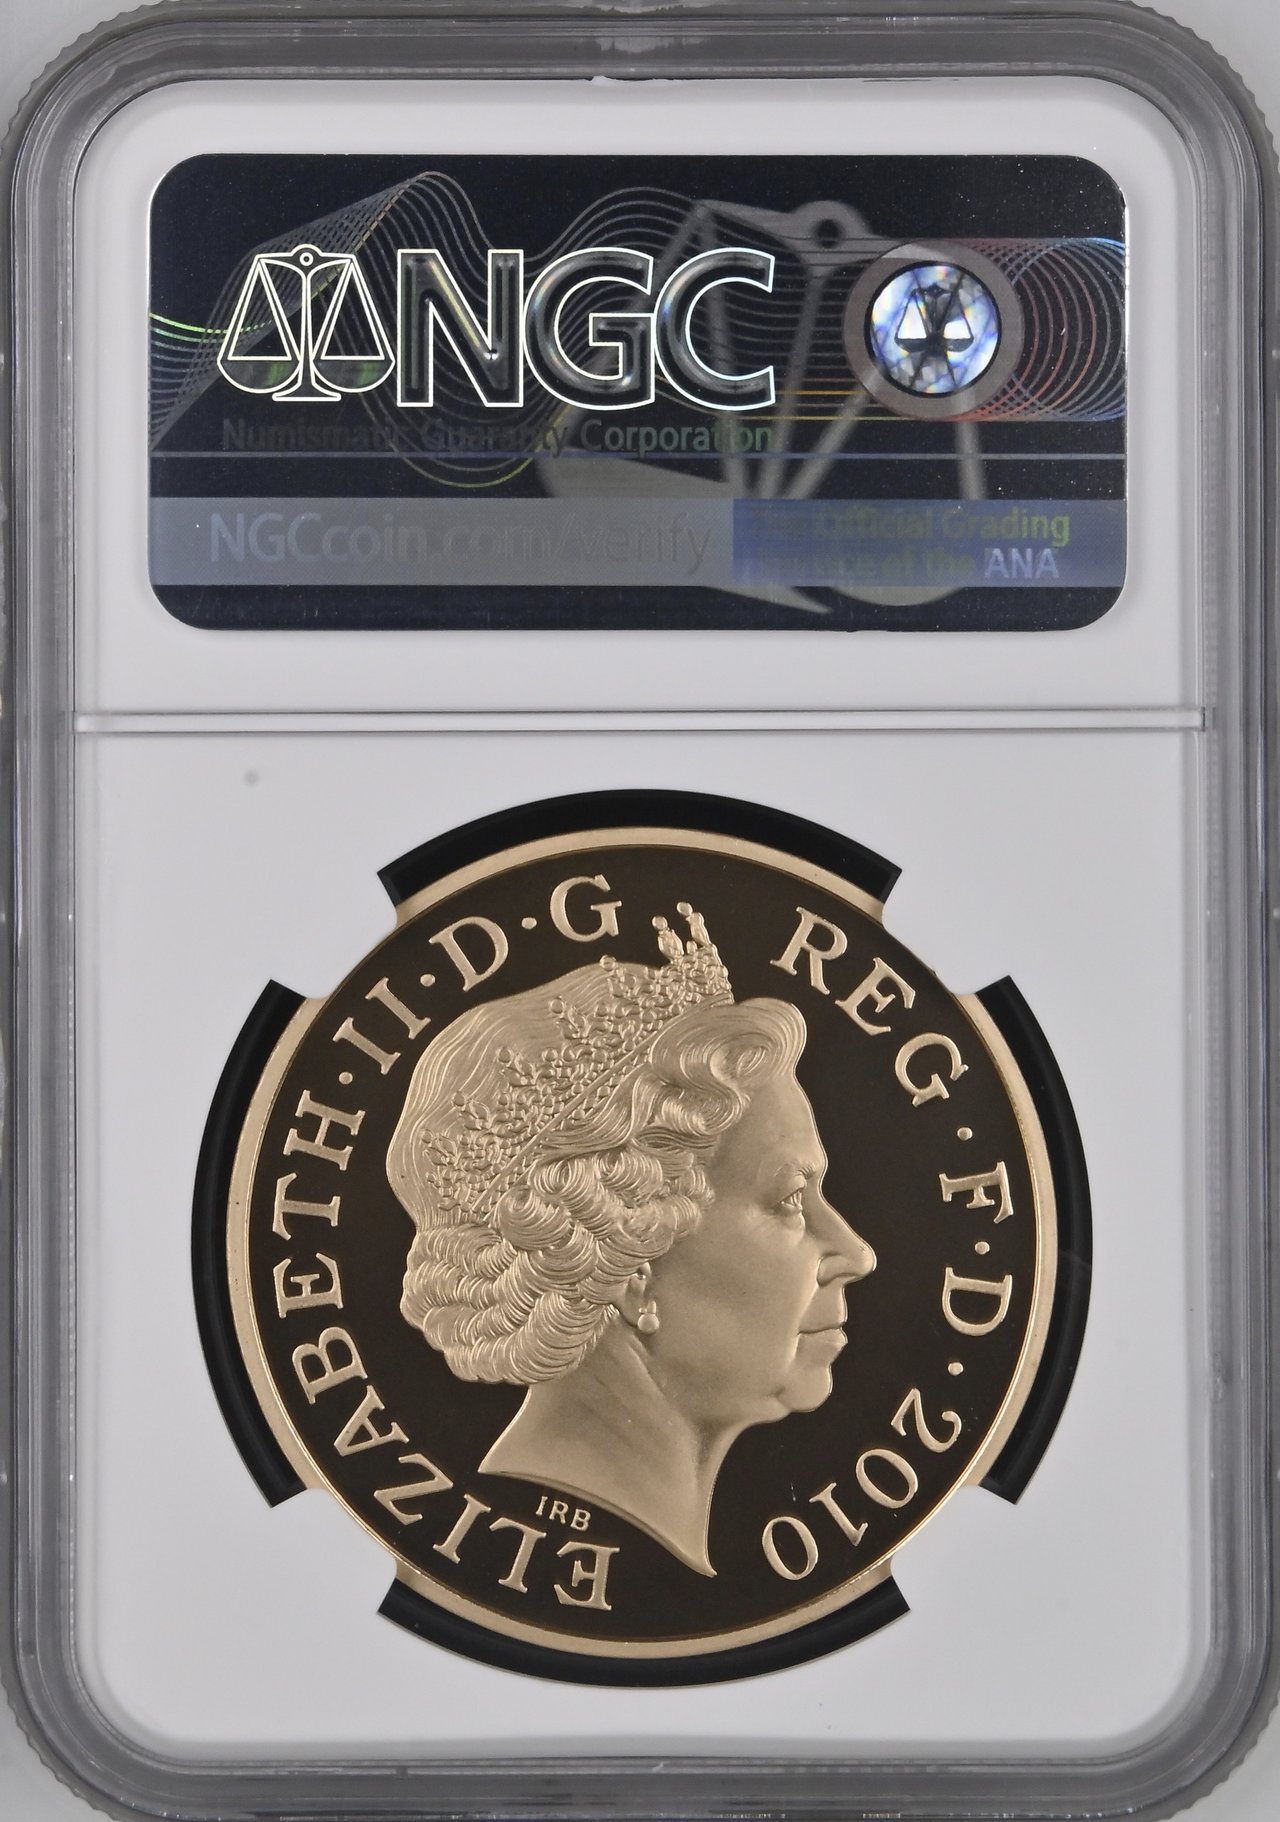 イギリス2010年王政復古 5ポンド金貨 NGC PF70 UCAM画像